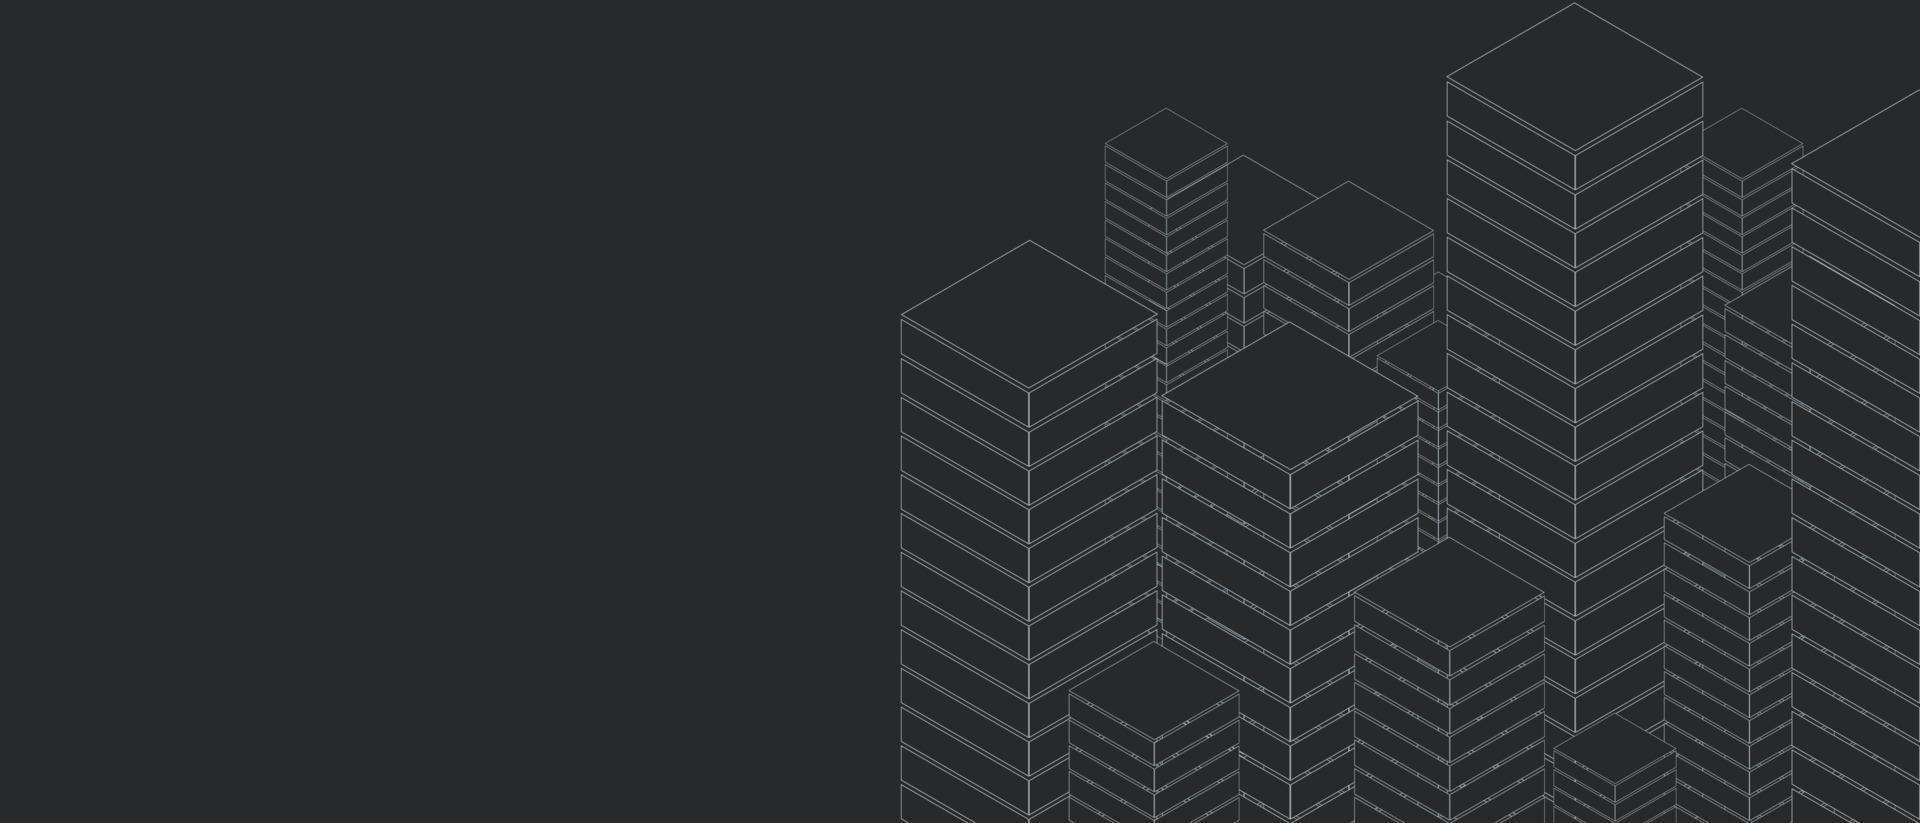 eenvoudig isometrisch gebouwoverzichtspatroon met moderne zwarte kleurenachtergrond. vector